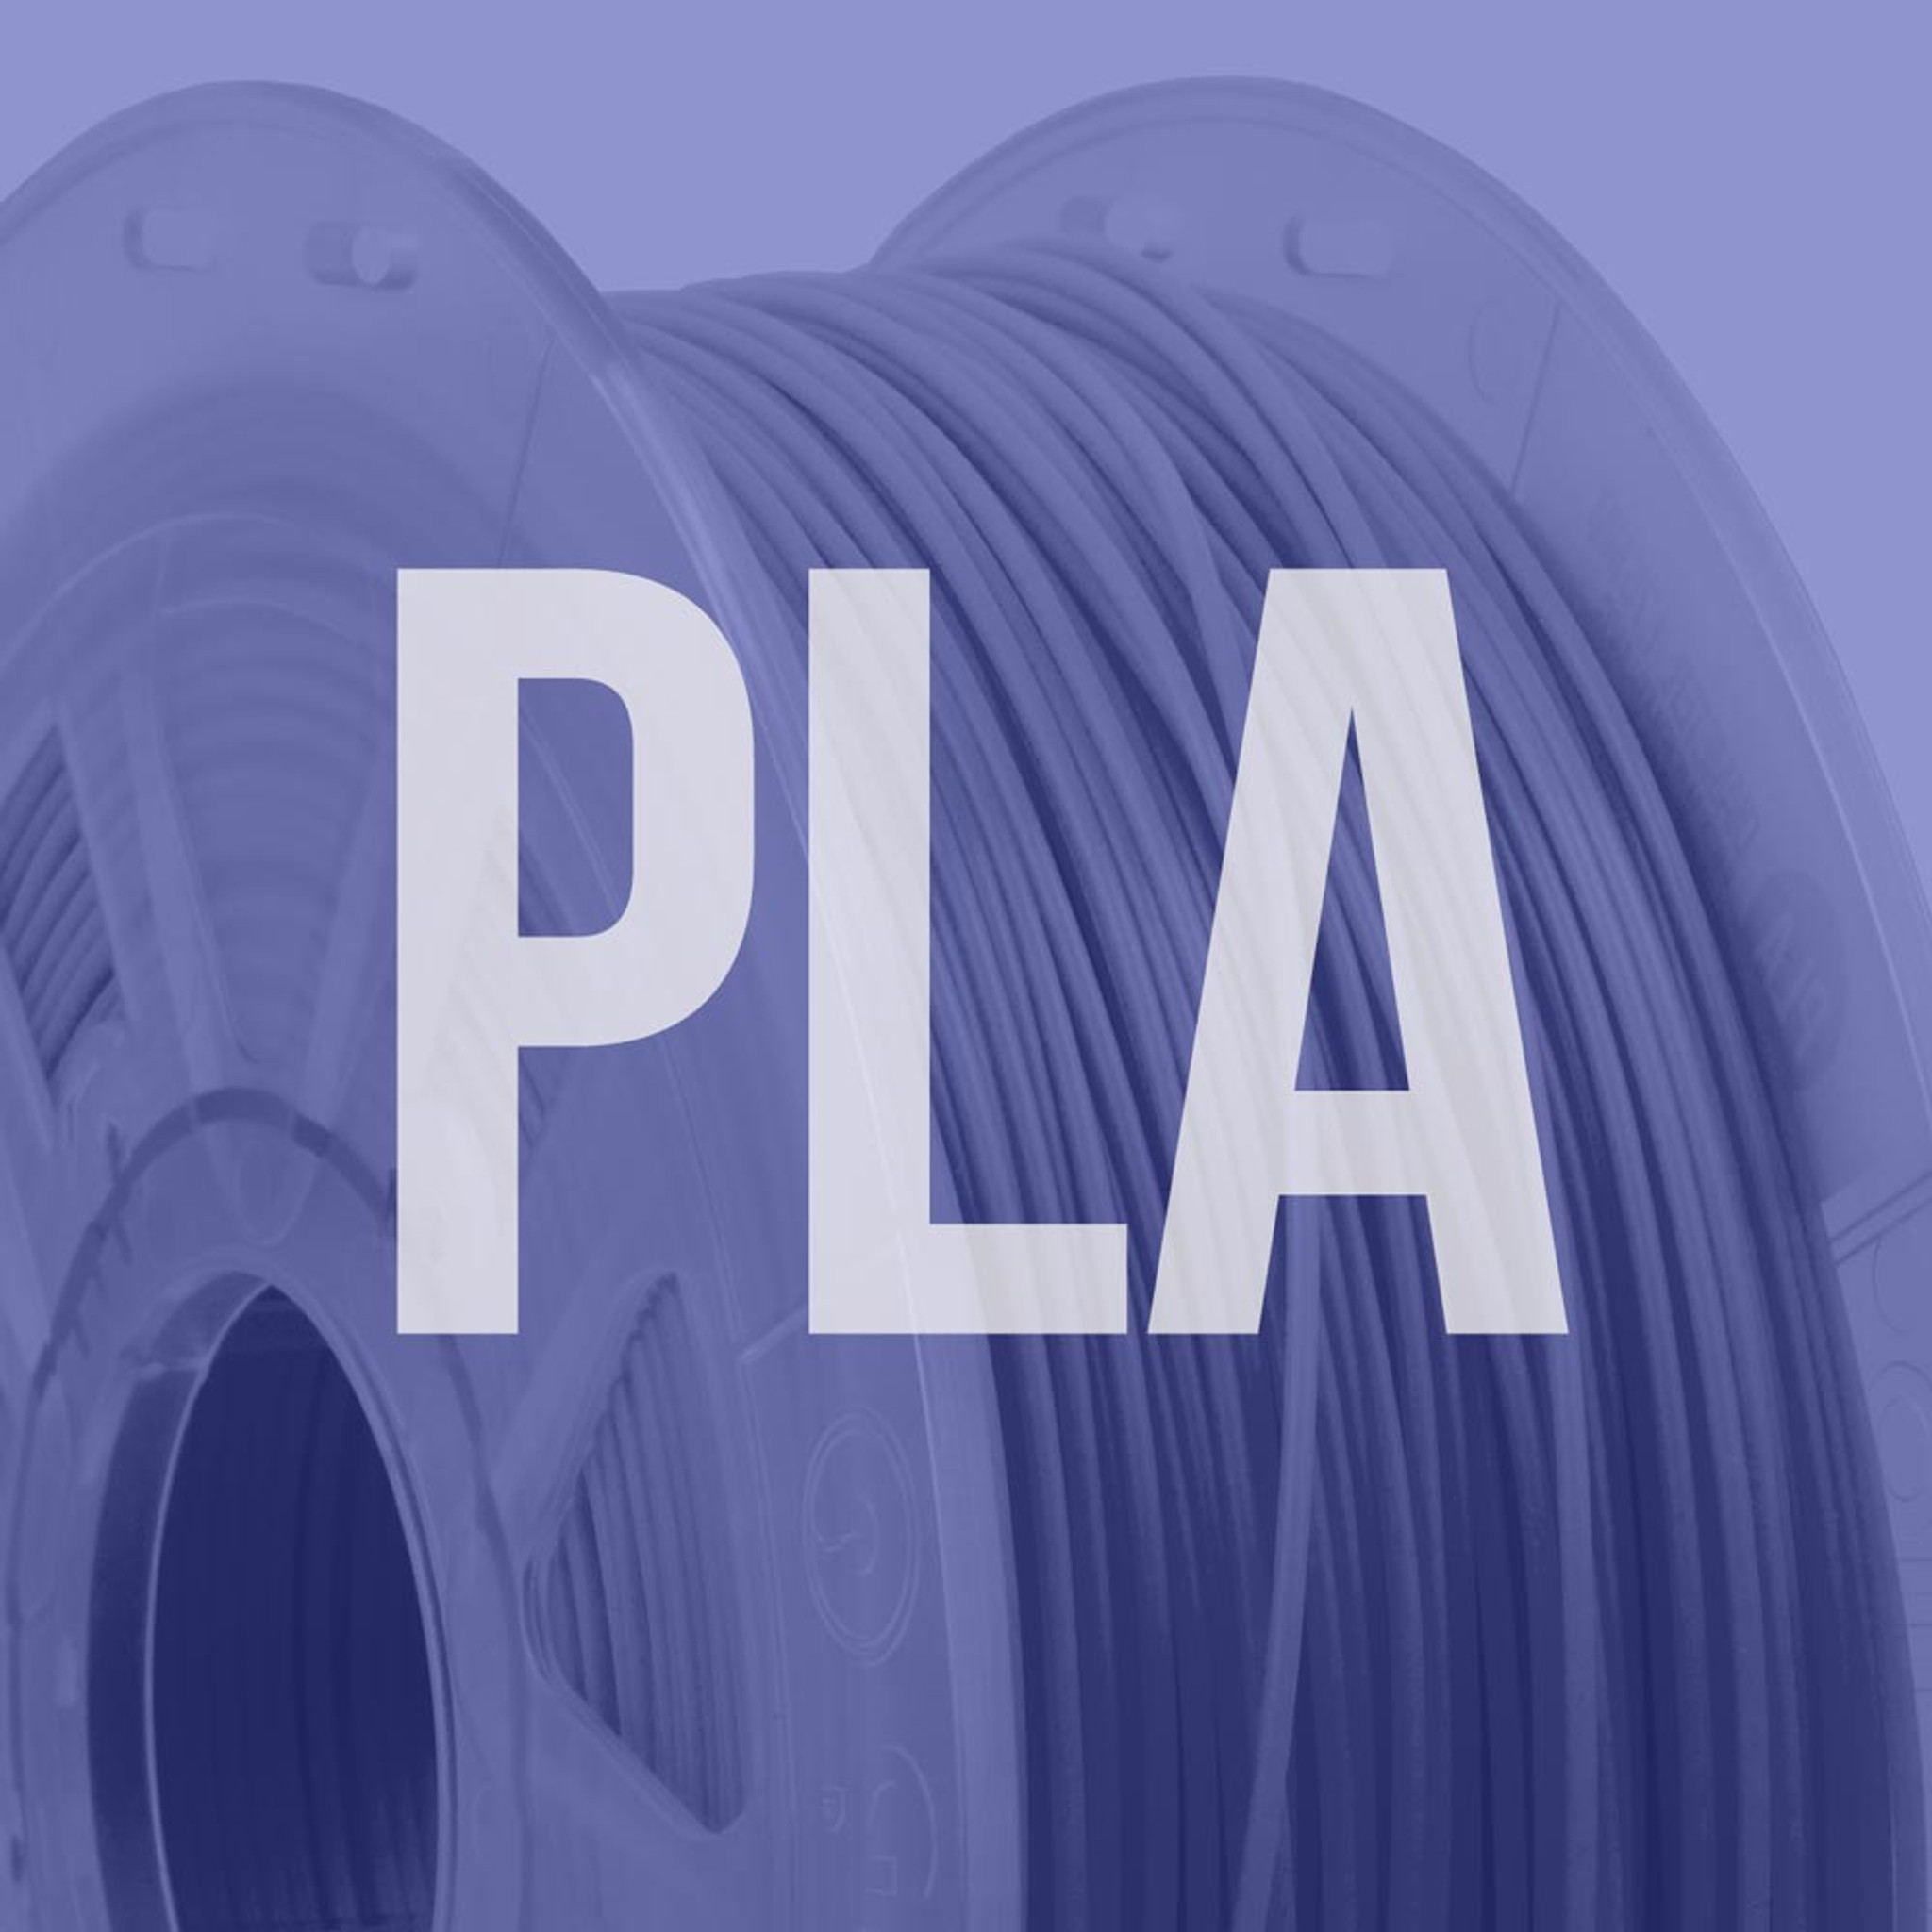 3D Printer PLA Filament